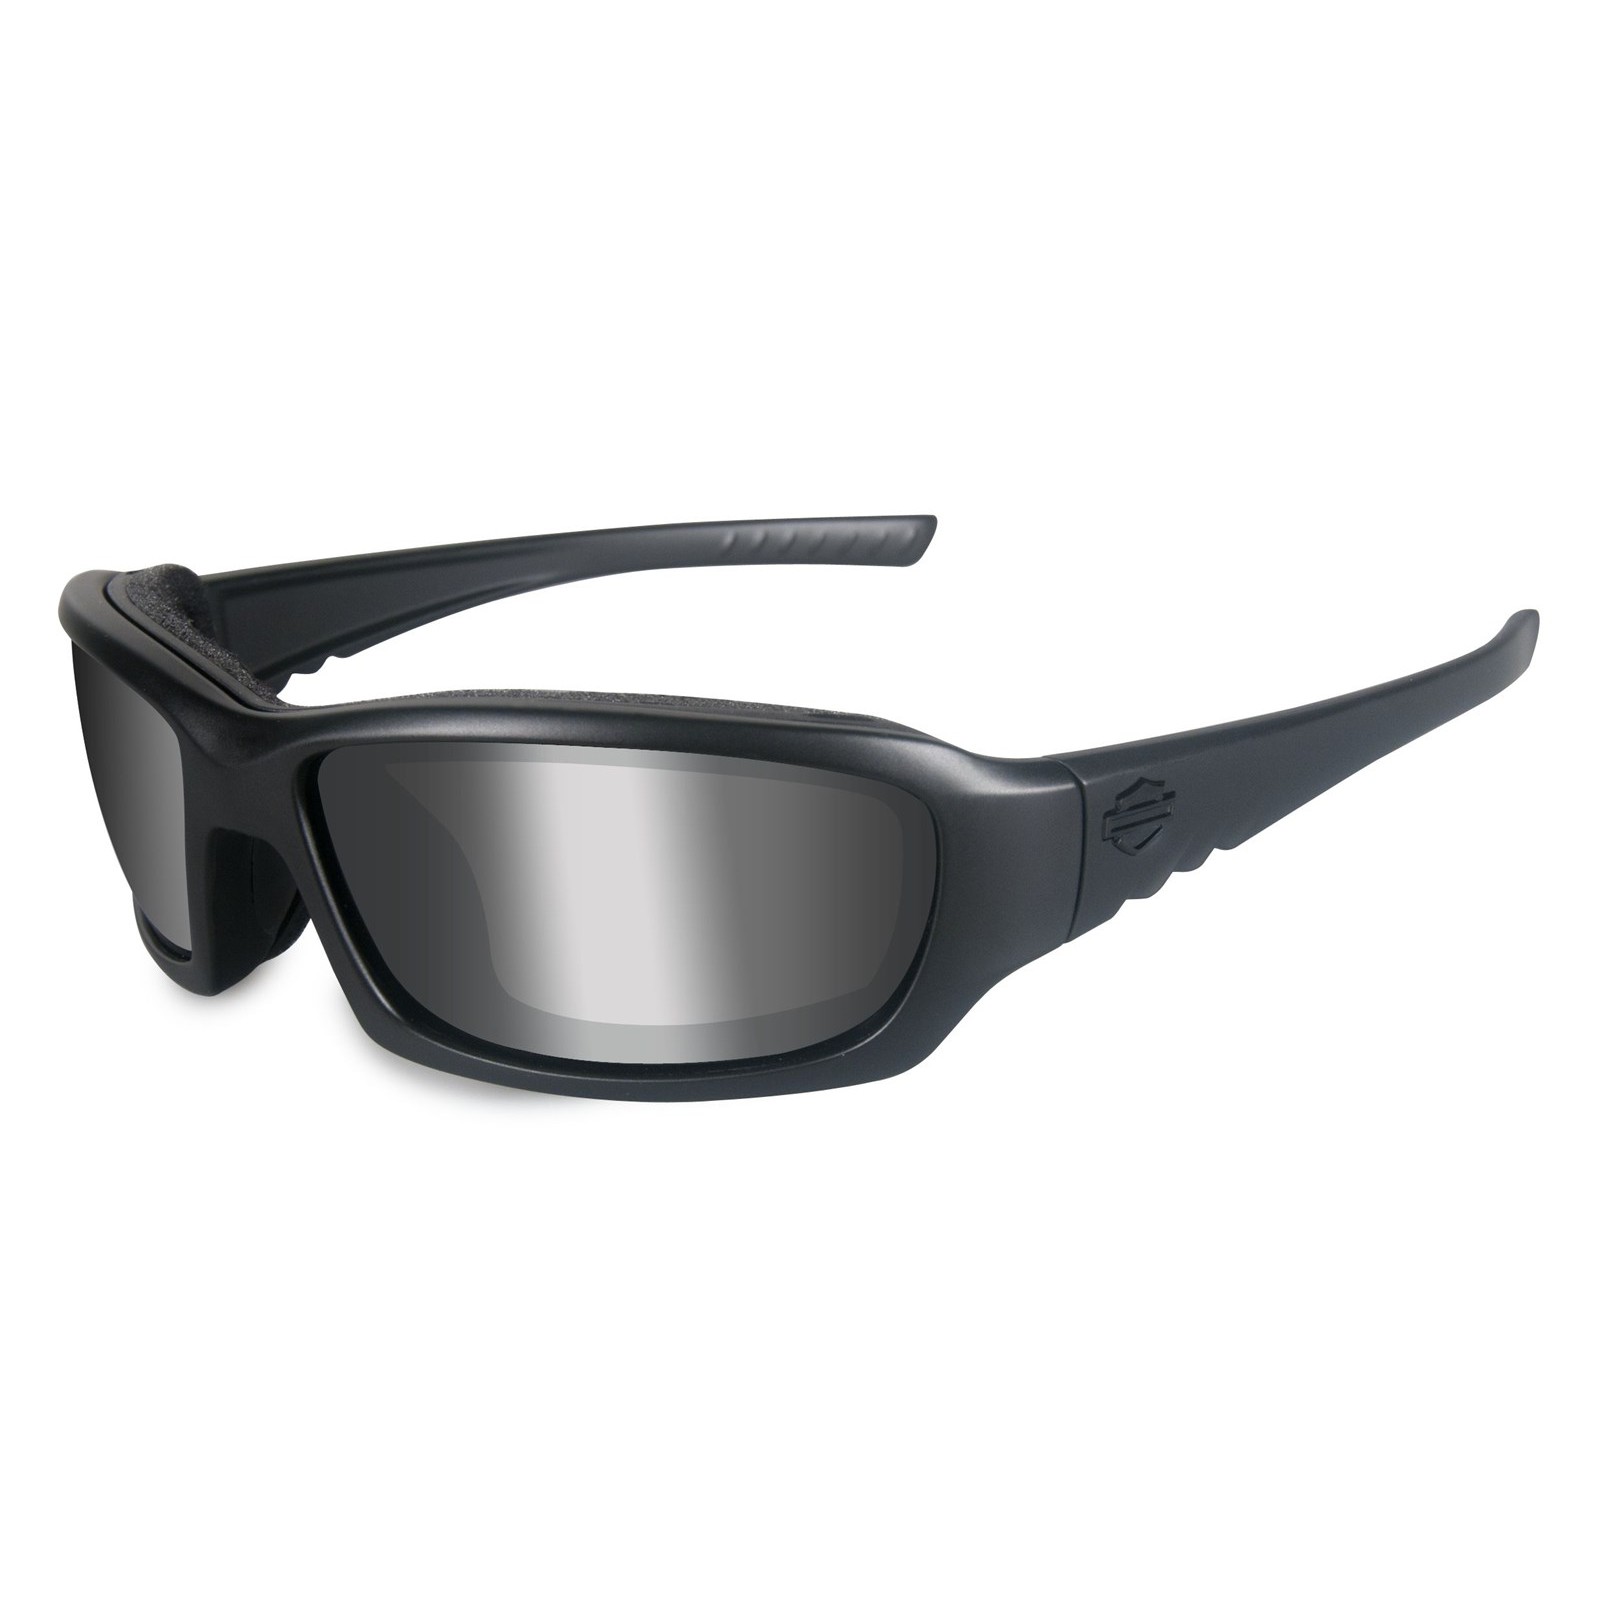 0,25 tot Accessoires Zonnebrillen & Eyewear Leesbrillen 3,50 Zwart/ Ruthenium HD1026 005 Harley Davidson Leesbril van 